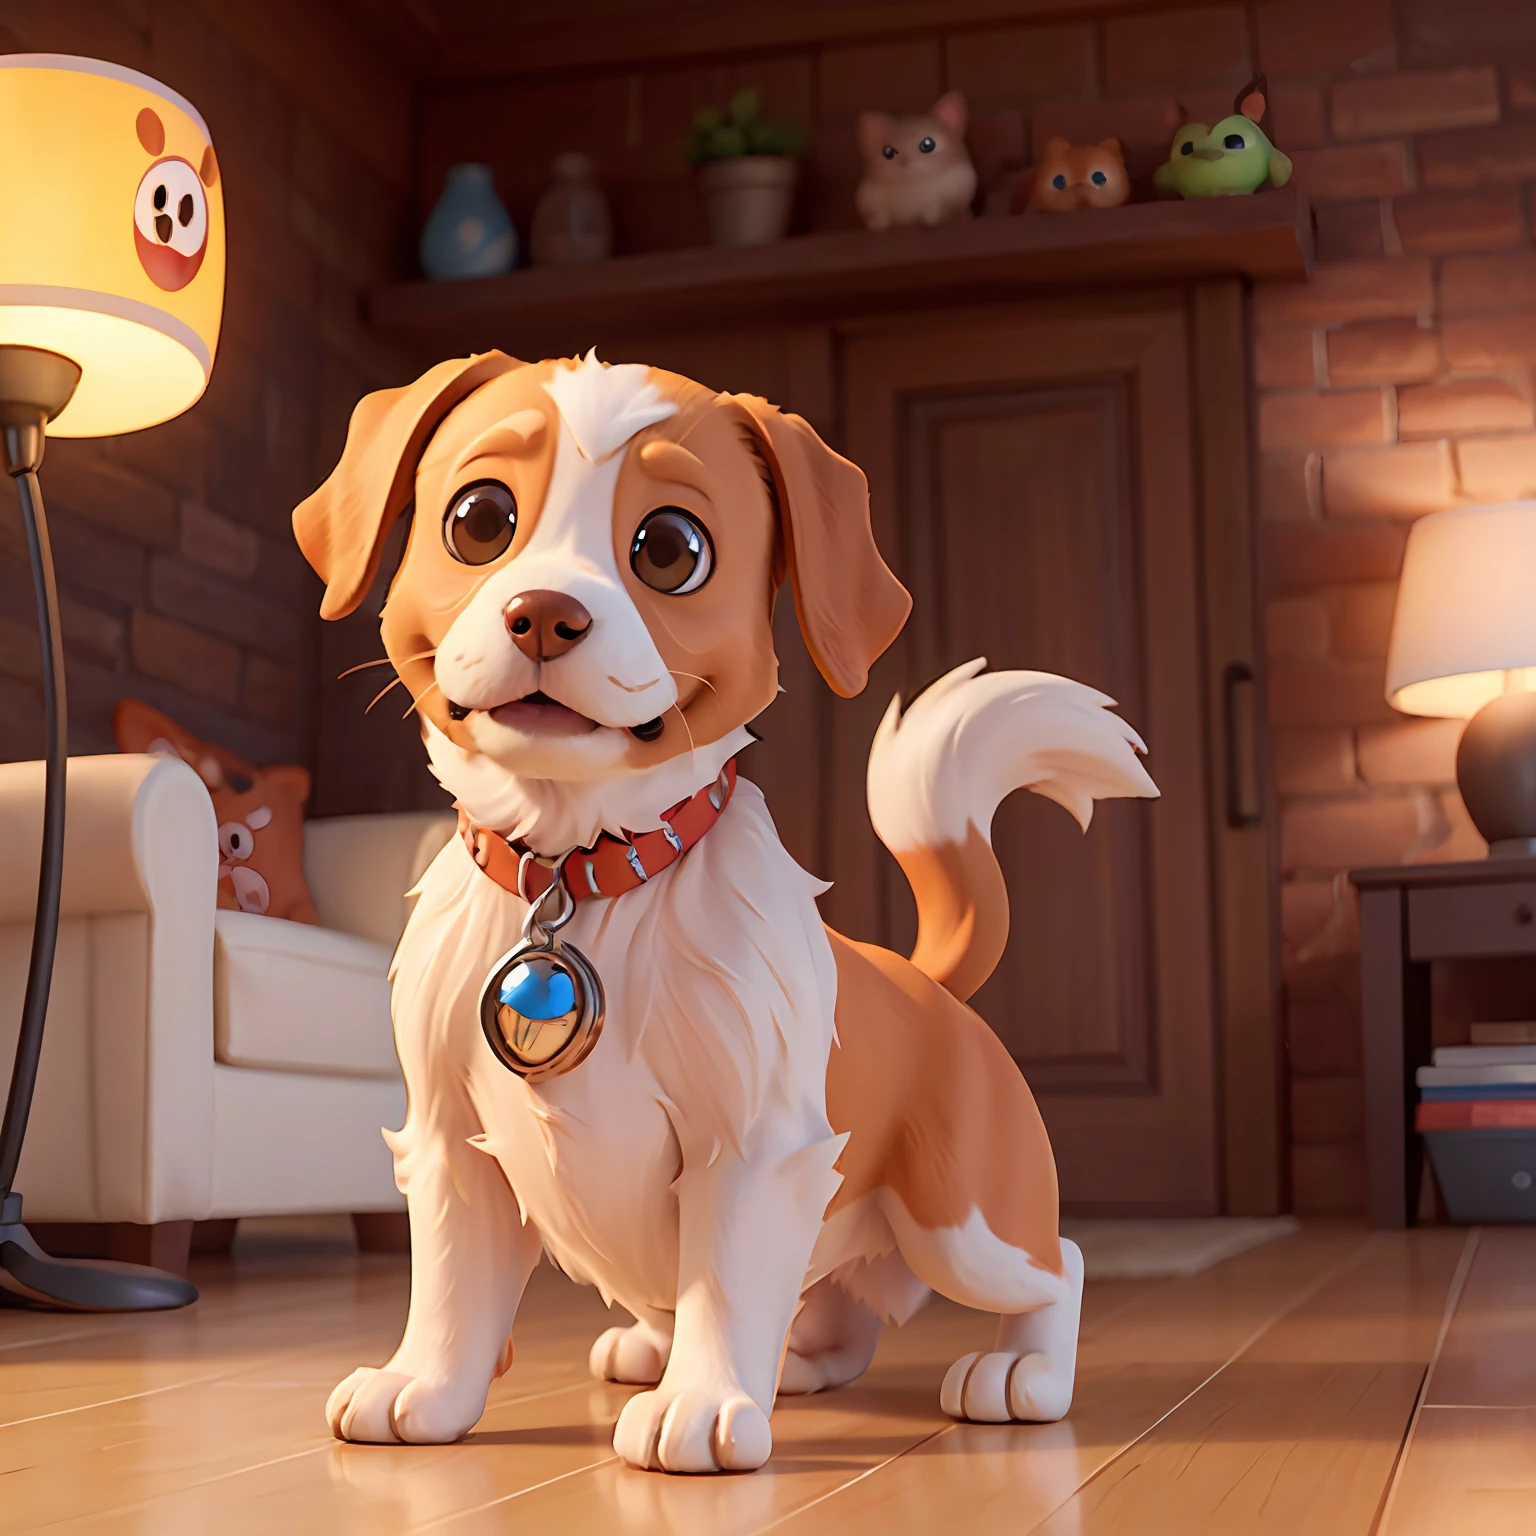 Adorable perro lindo al estilo Pixar, estilo disney, animación pixar, Diseño de personaje, renderman, iluminación acogedora